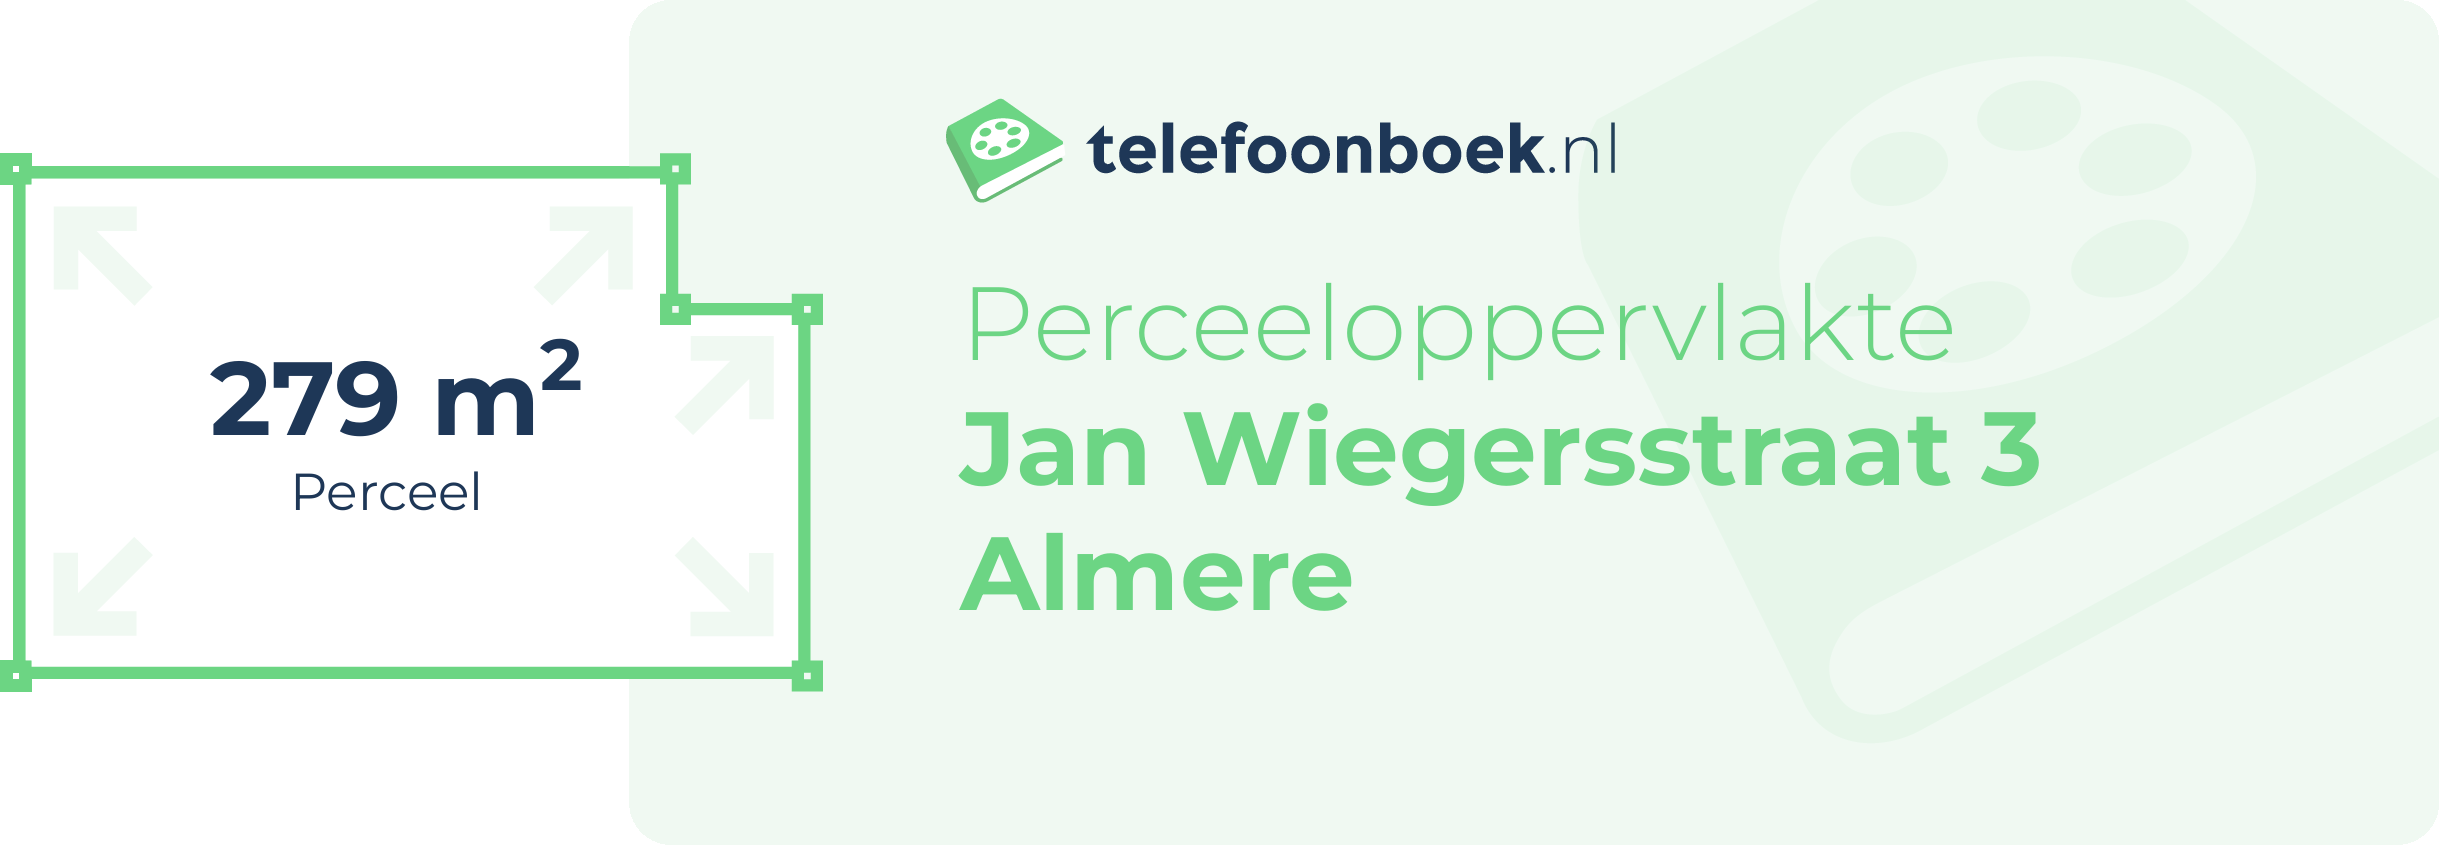 Perceeloppervlakte Jan Wiegersstraat 3 Almere